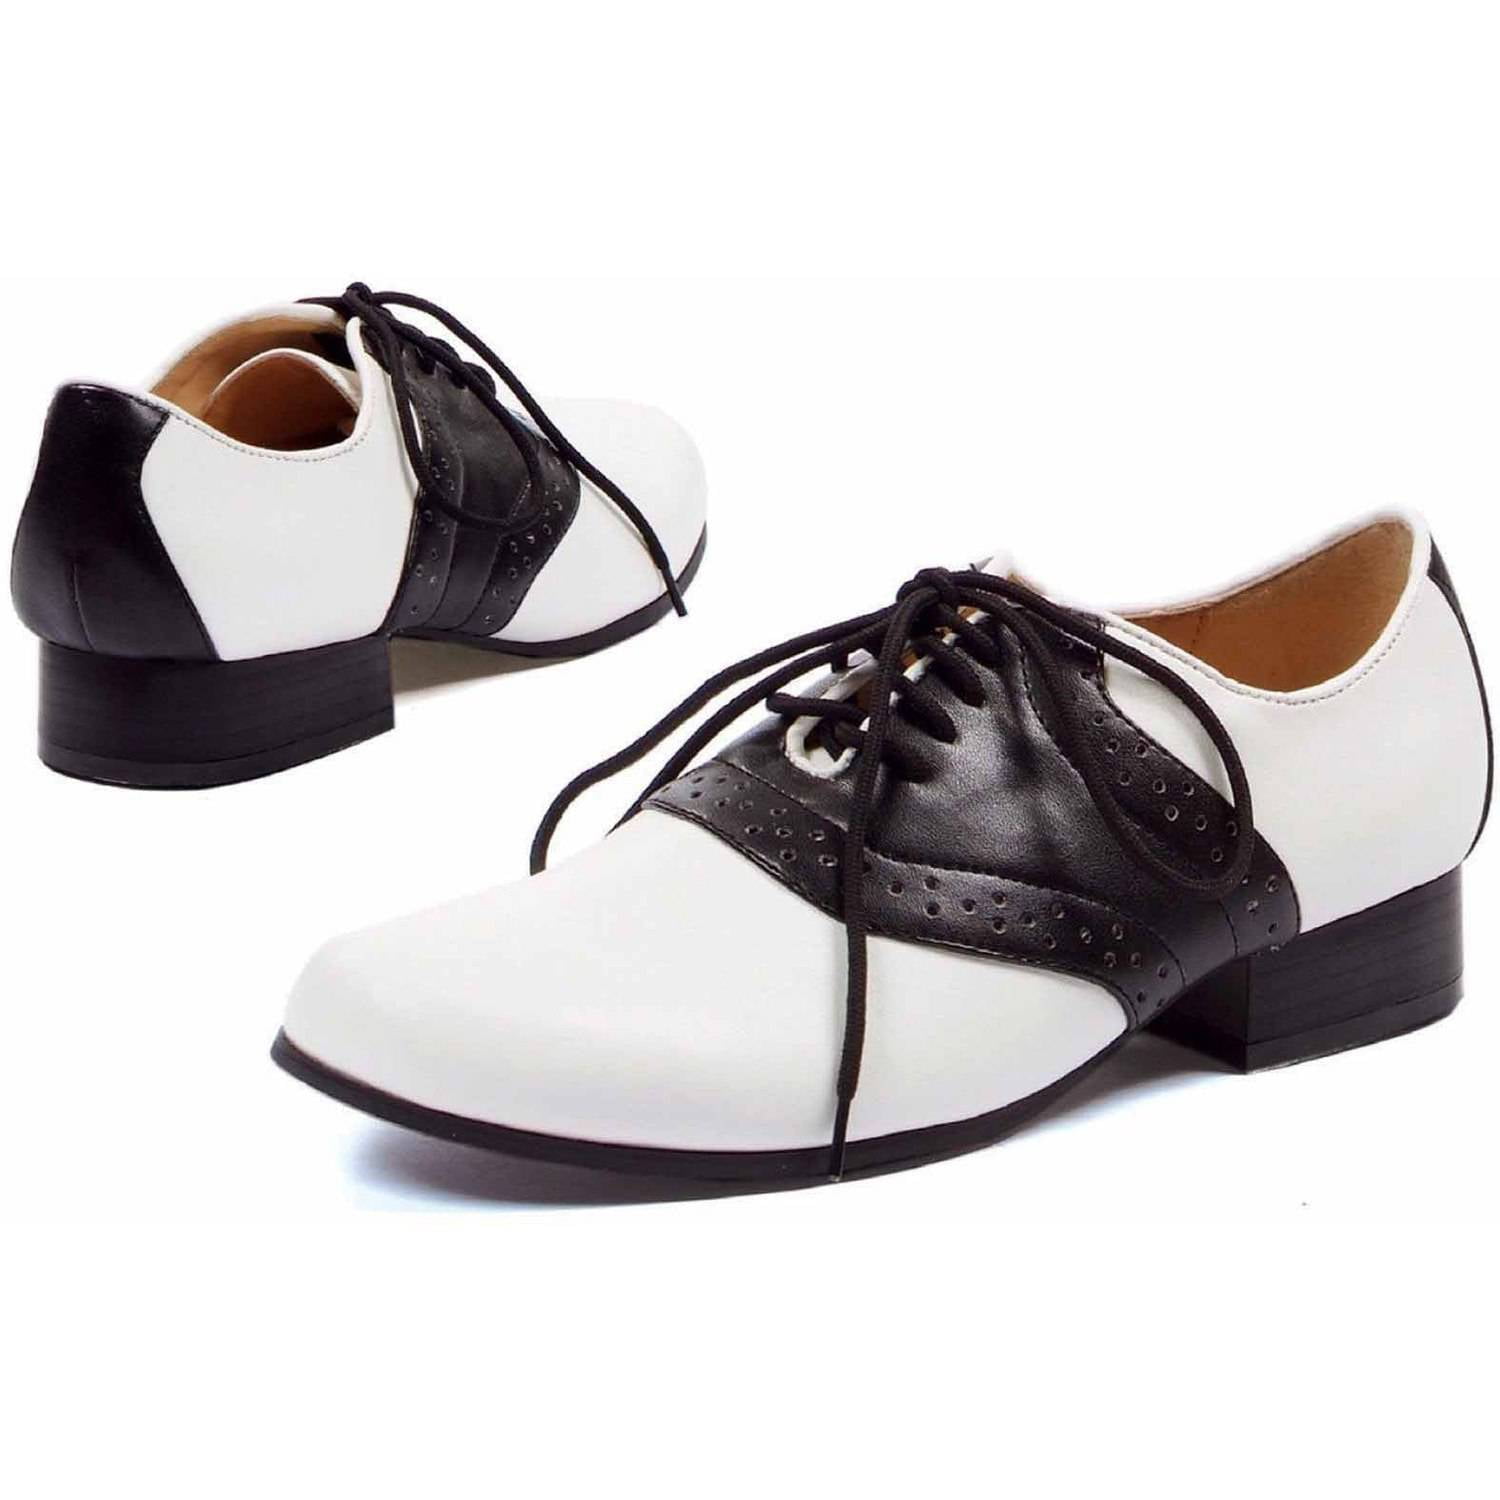 Saddle Black/White Shoes Women's Adult 